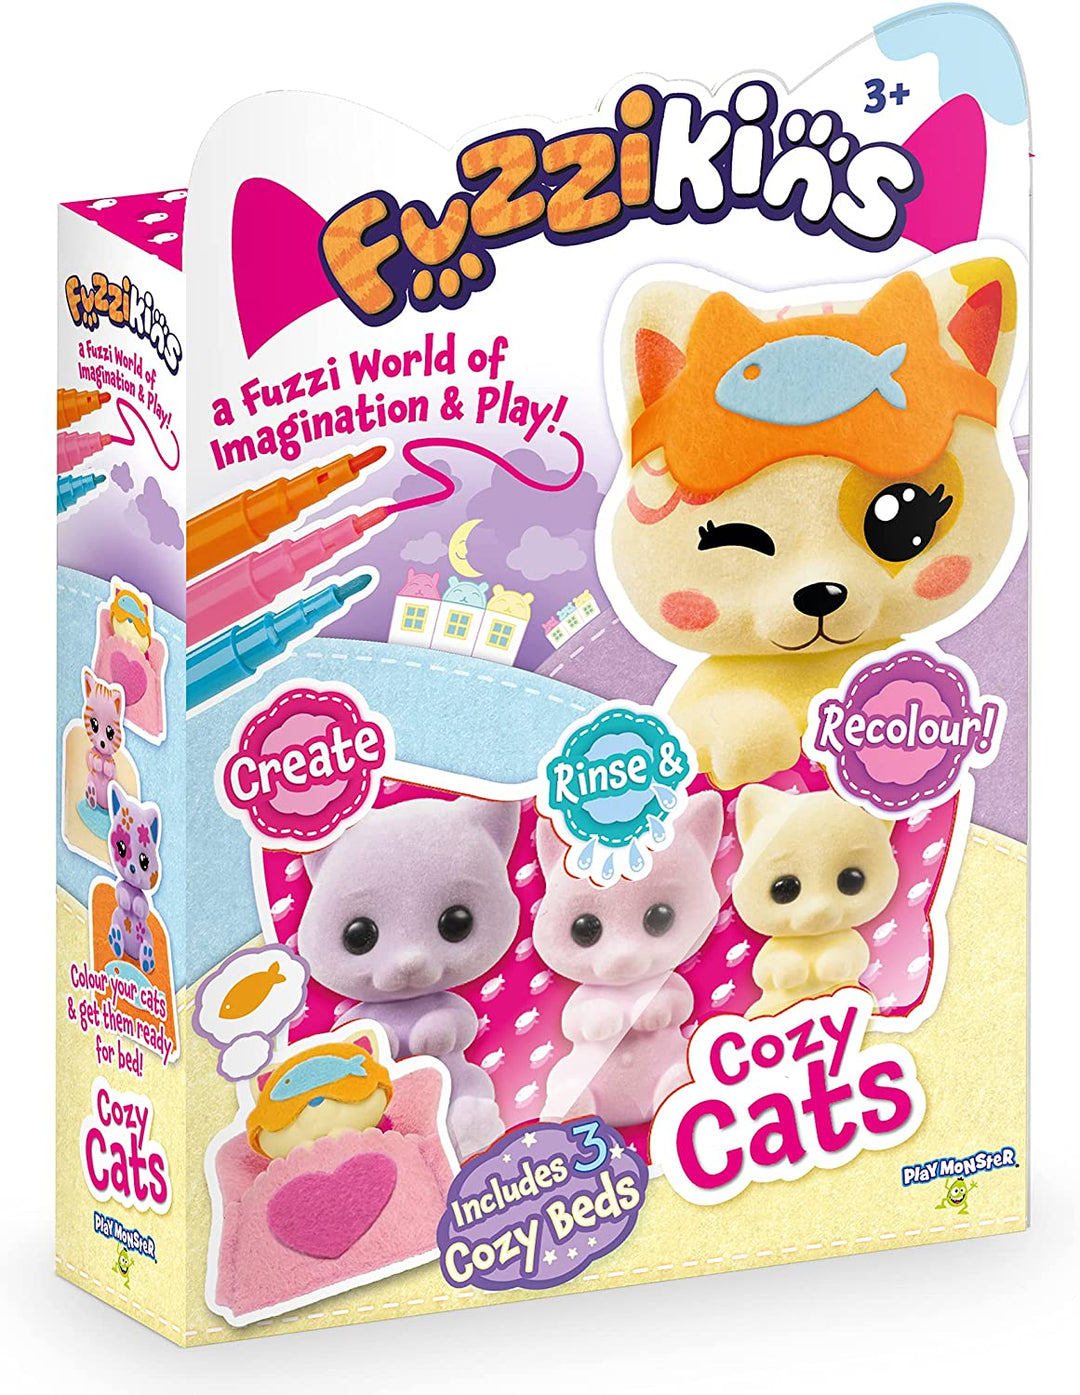 Juego de muñecas Fuzzikins FF001, Cozy Cats